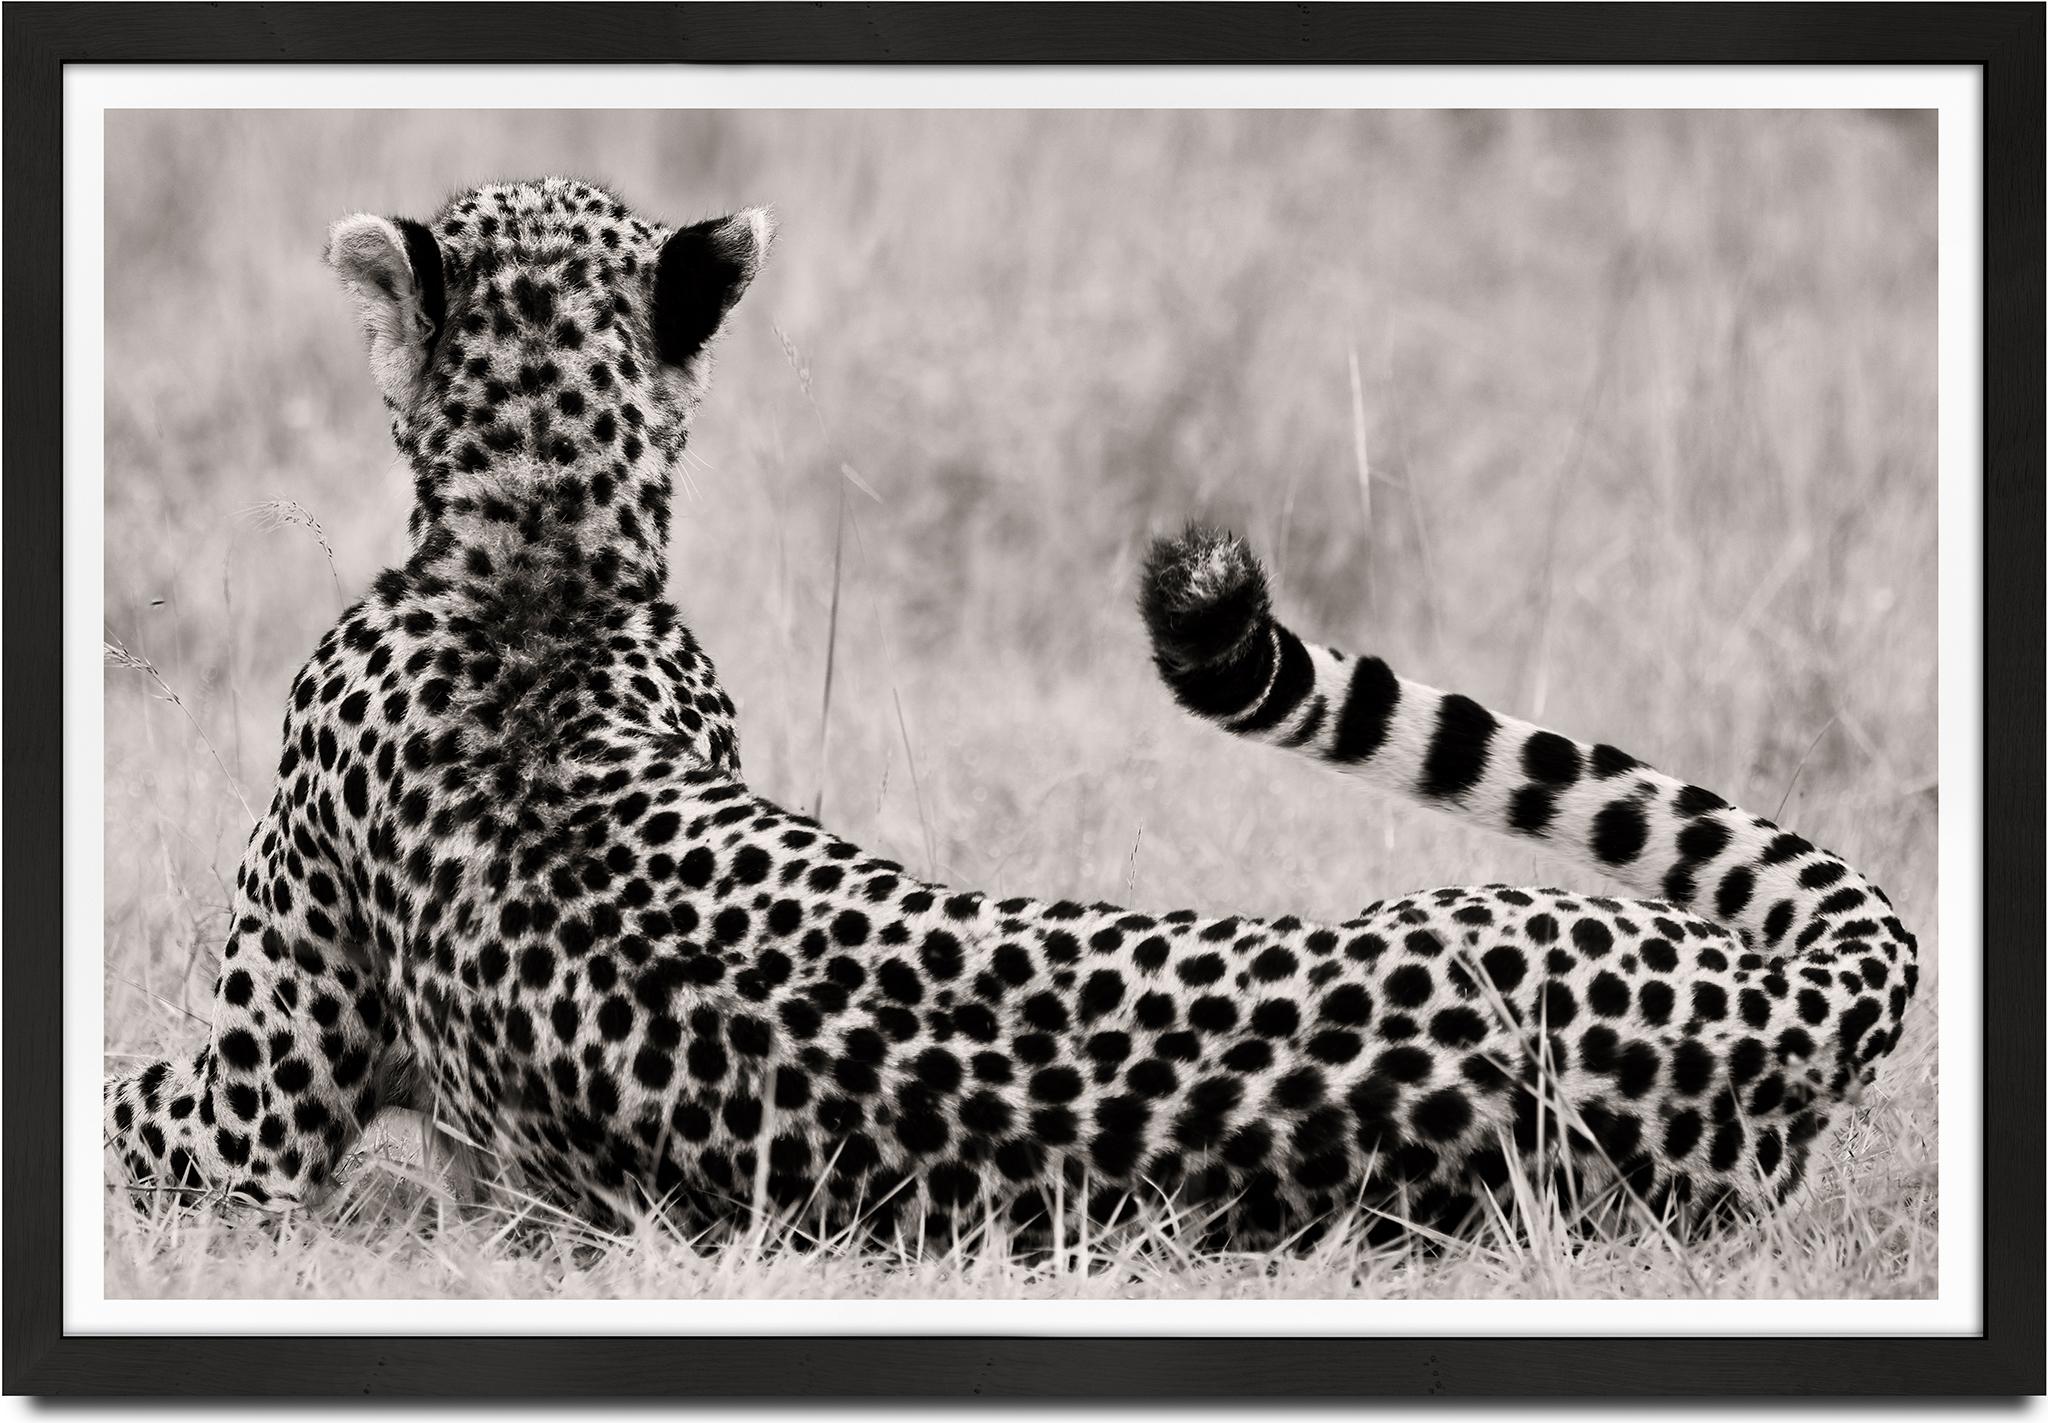 The Divine, Cheetah, Schwarz- und Hwite-Fotografie, Afrika, Porträt, Tierwelt – Photograph von Joachim Schmeisser